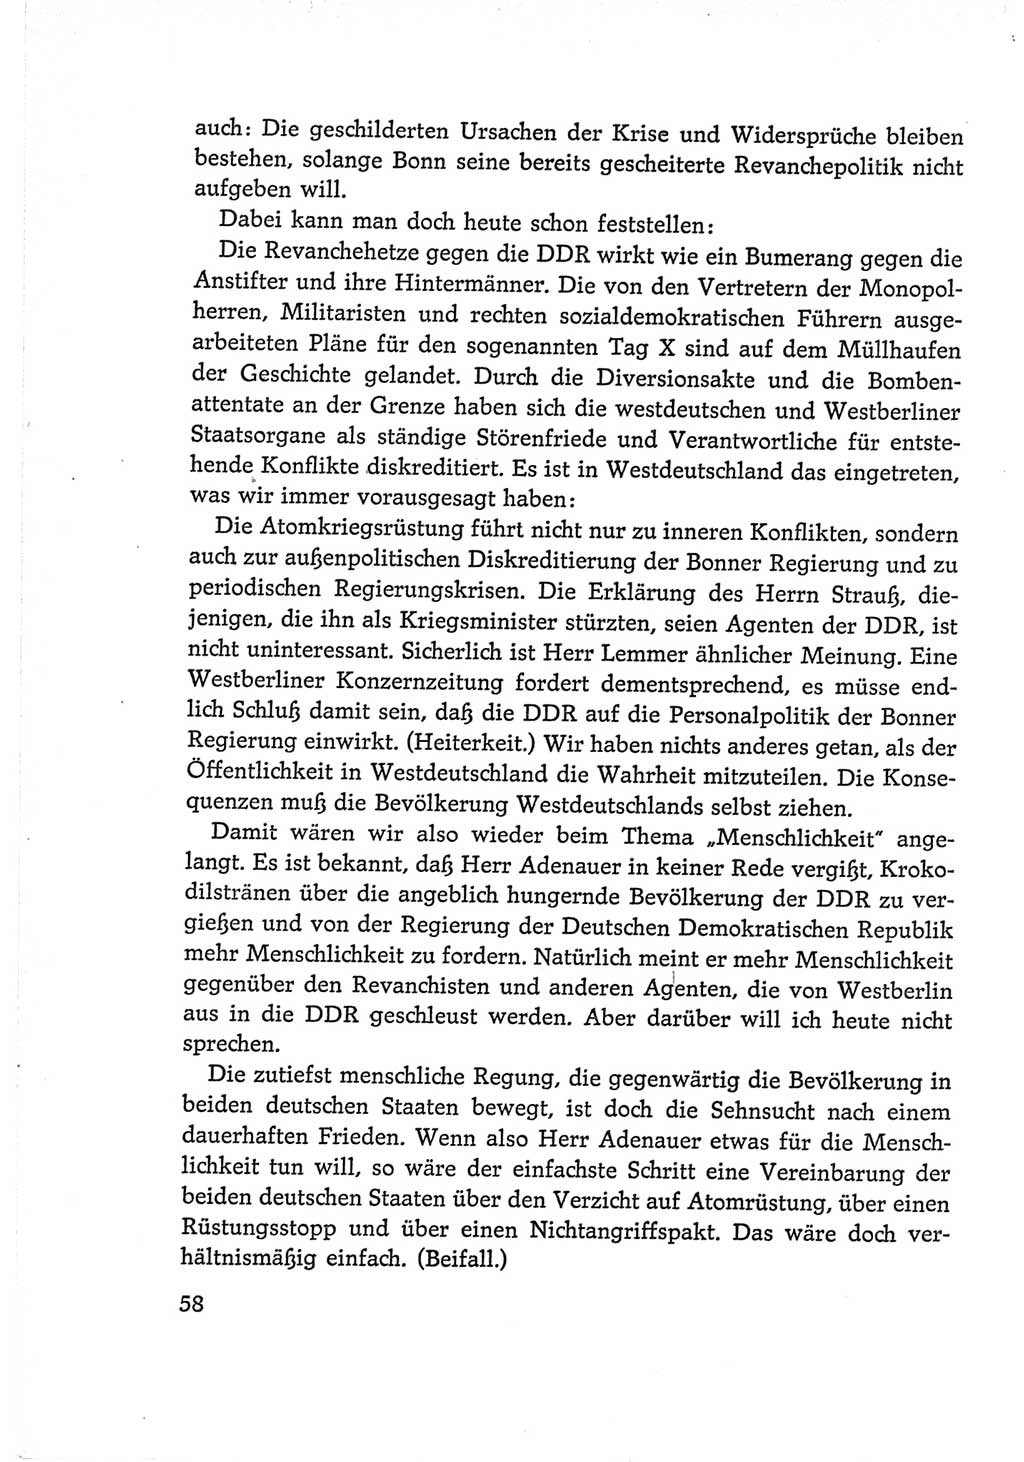 Protokoll der Verhandlungen des Ⅵ. Parteitages der Sozialistischen Einheitspartei Deutschlands (SED) [Deutsche Demokratische Republik (DDR)] 1963, Band Ⅰ, Seite 58 (Prot. Verh. Ⅵ. PT SED DDR 1963, Bd. Ⅰ, S. 58)